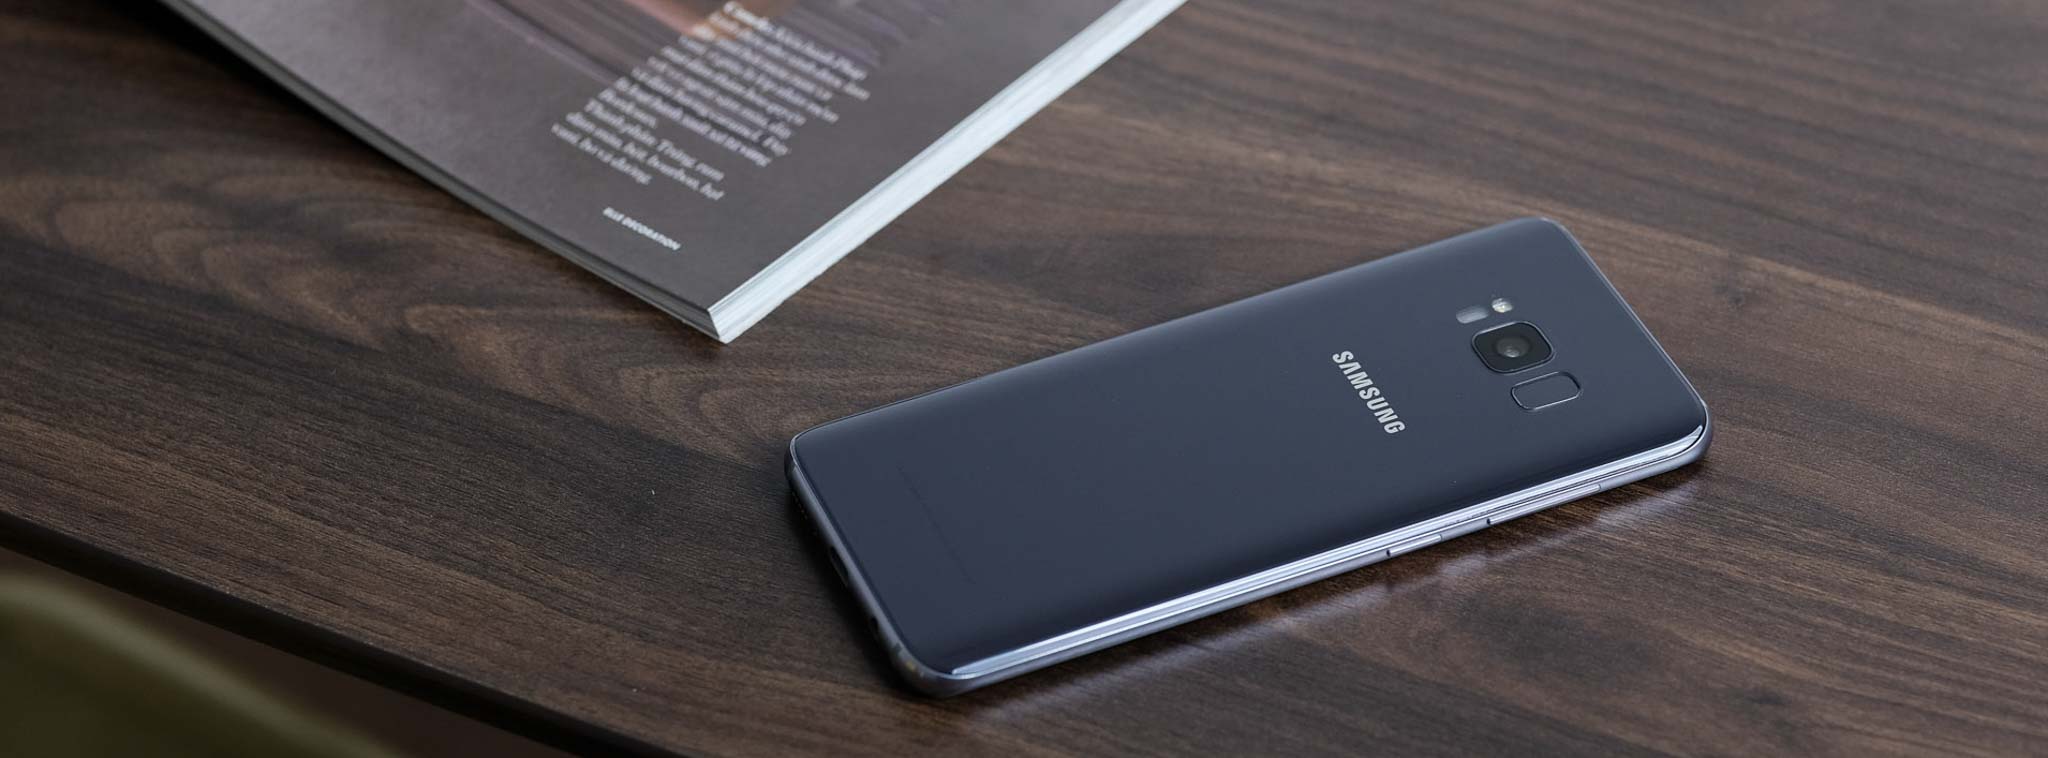 Galaxy S9 và S9+ sẽ ra mắt sớm vào tháng 1, chỉ dòng Plus mới có camera kép và RAM 6GB?